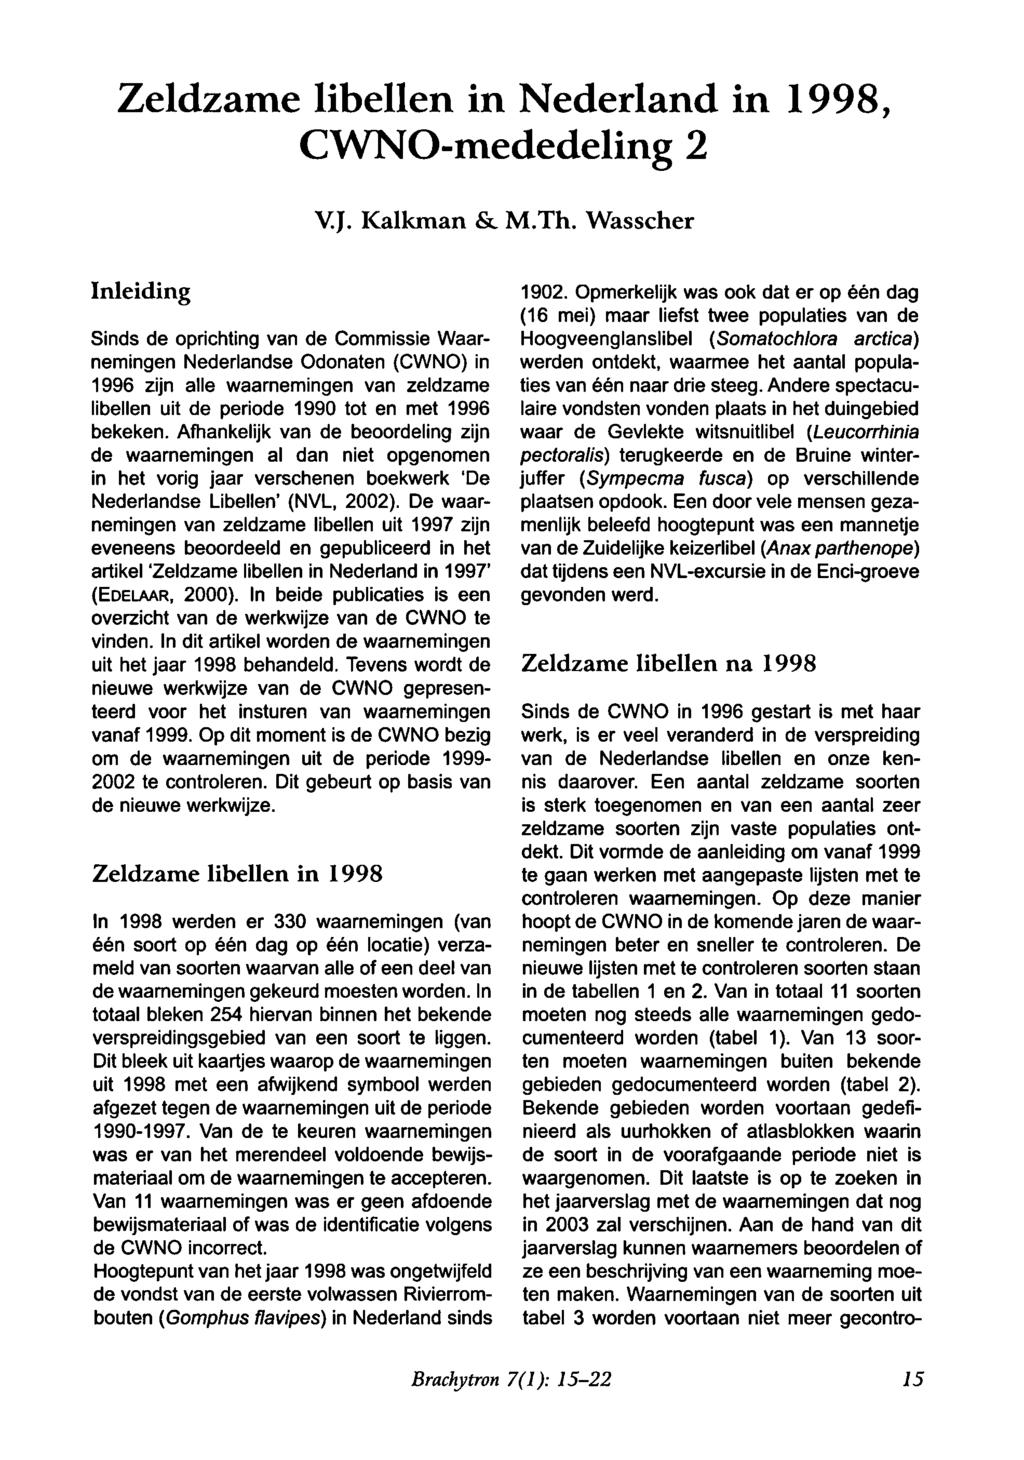 Zeldzame libellen in Nederland in 1998, CWNO-mededeling 2 V.J. Kalkman & M.Th.